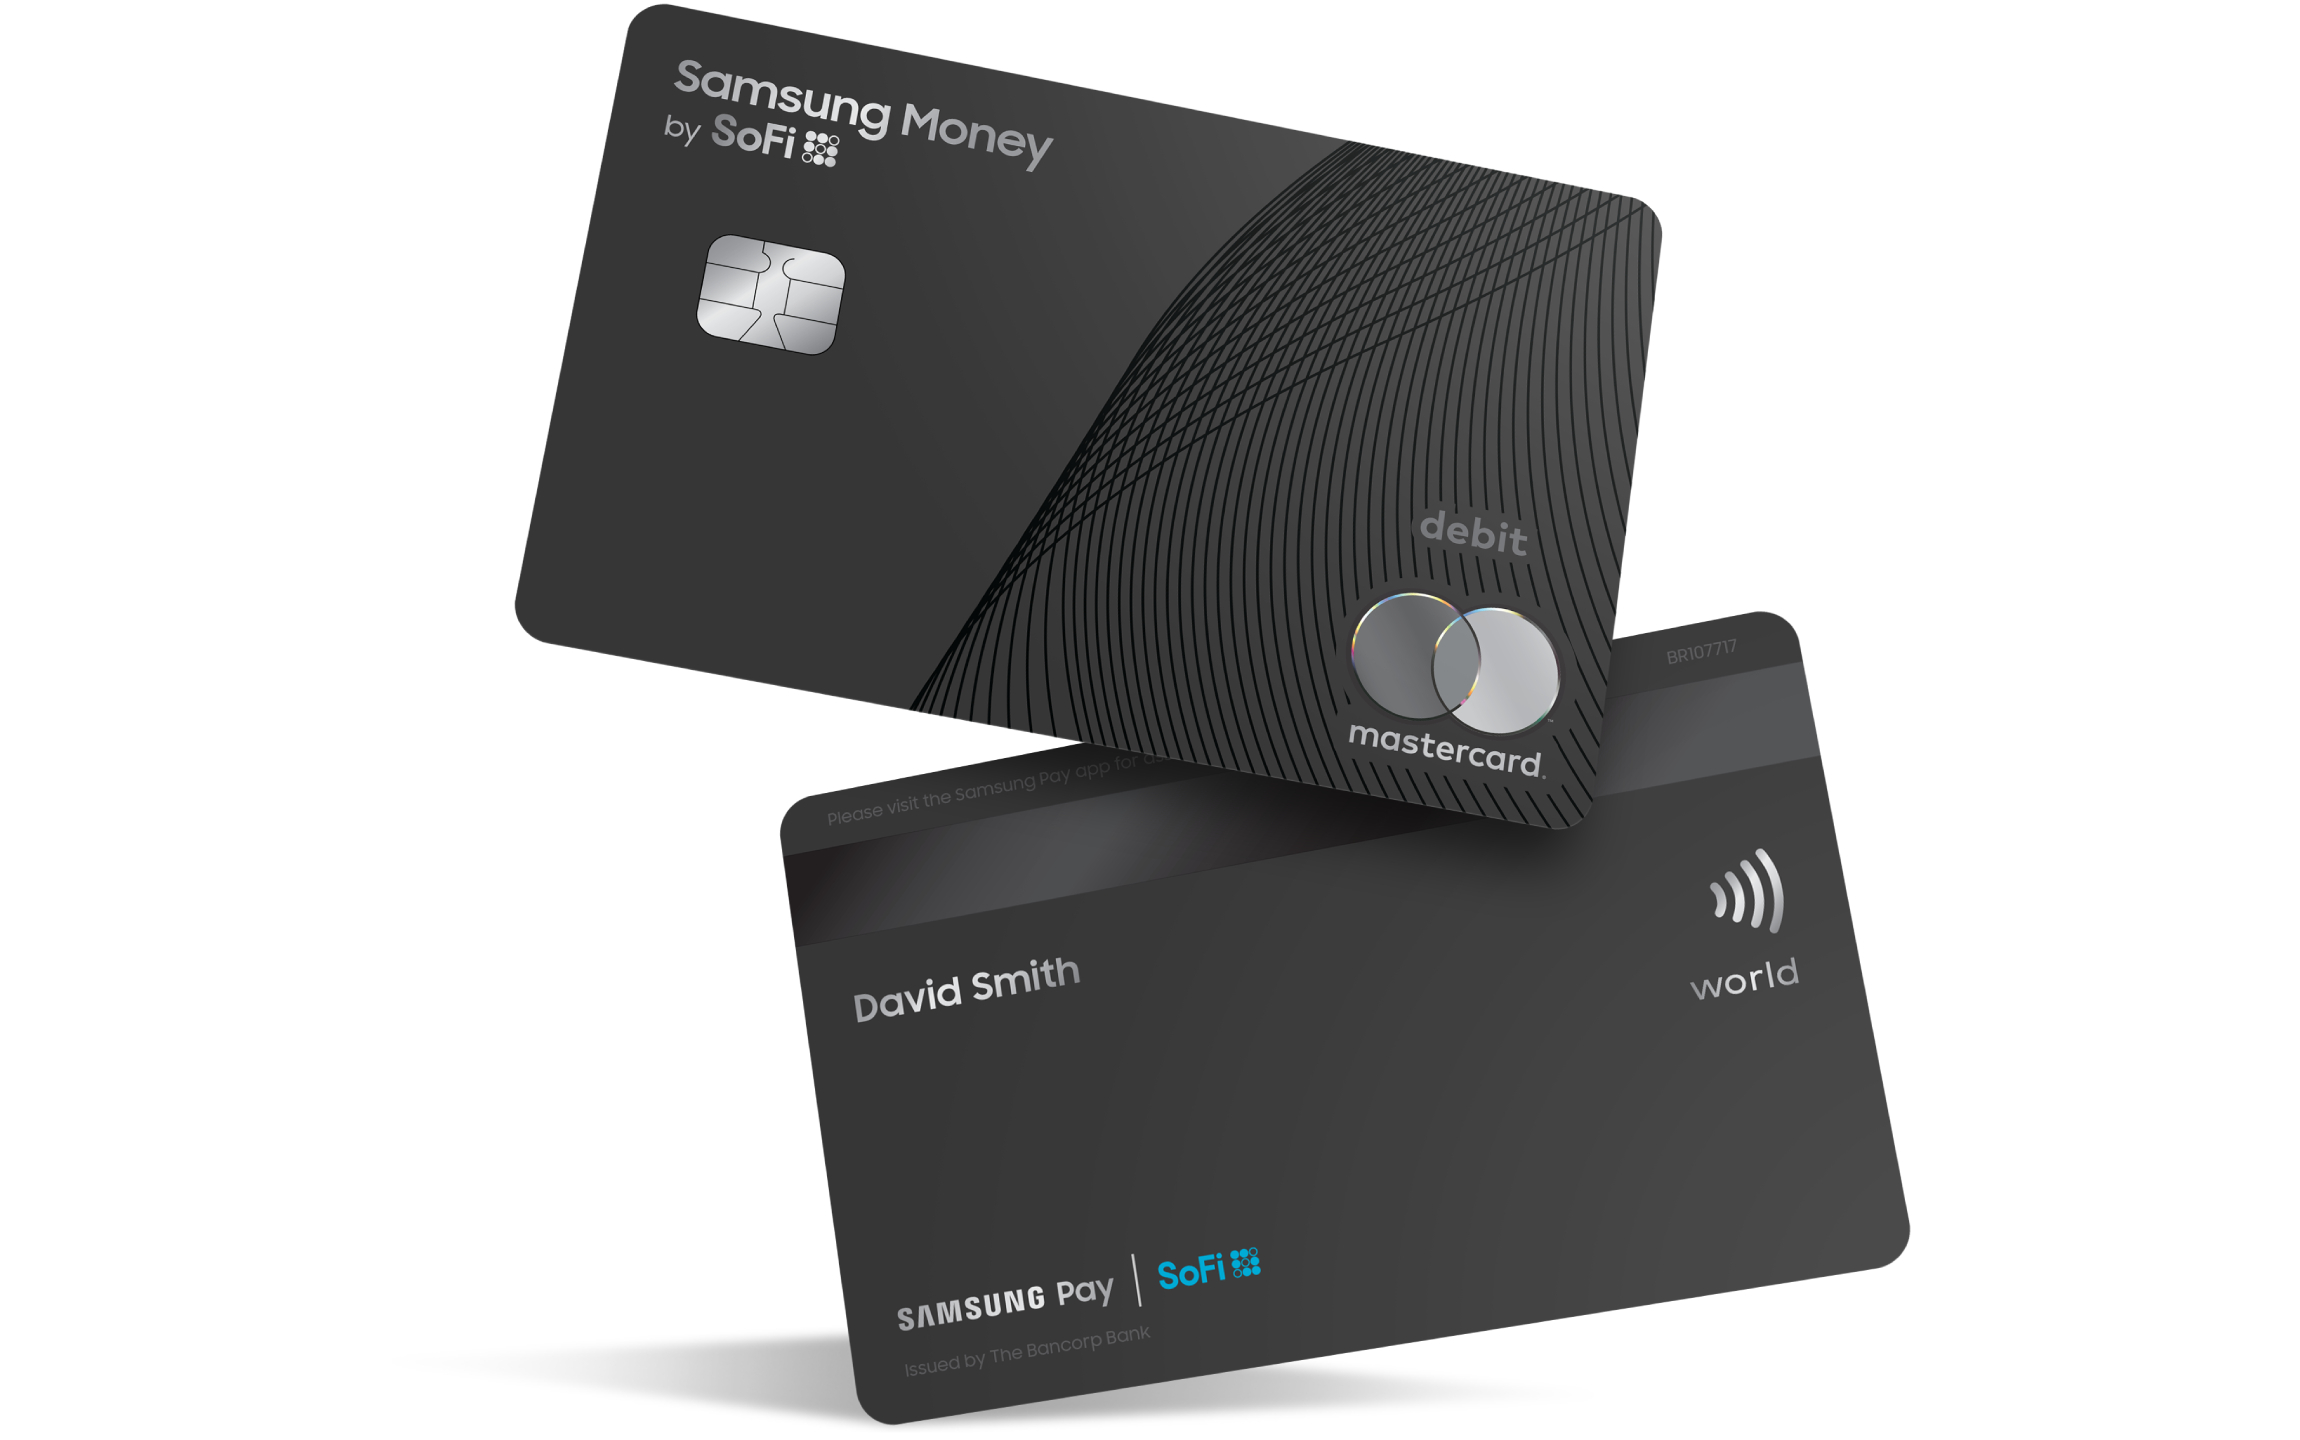 Samsung giới thiệu thẻ ghi nợ Samsung Money được liên kết với Samsung Pay